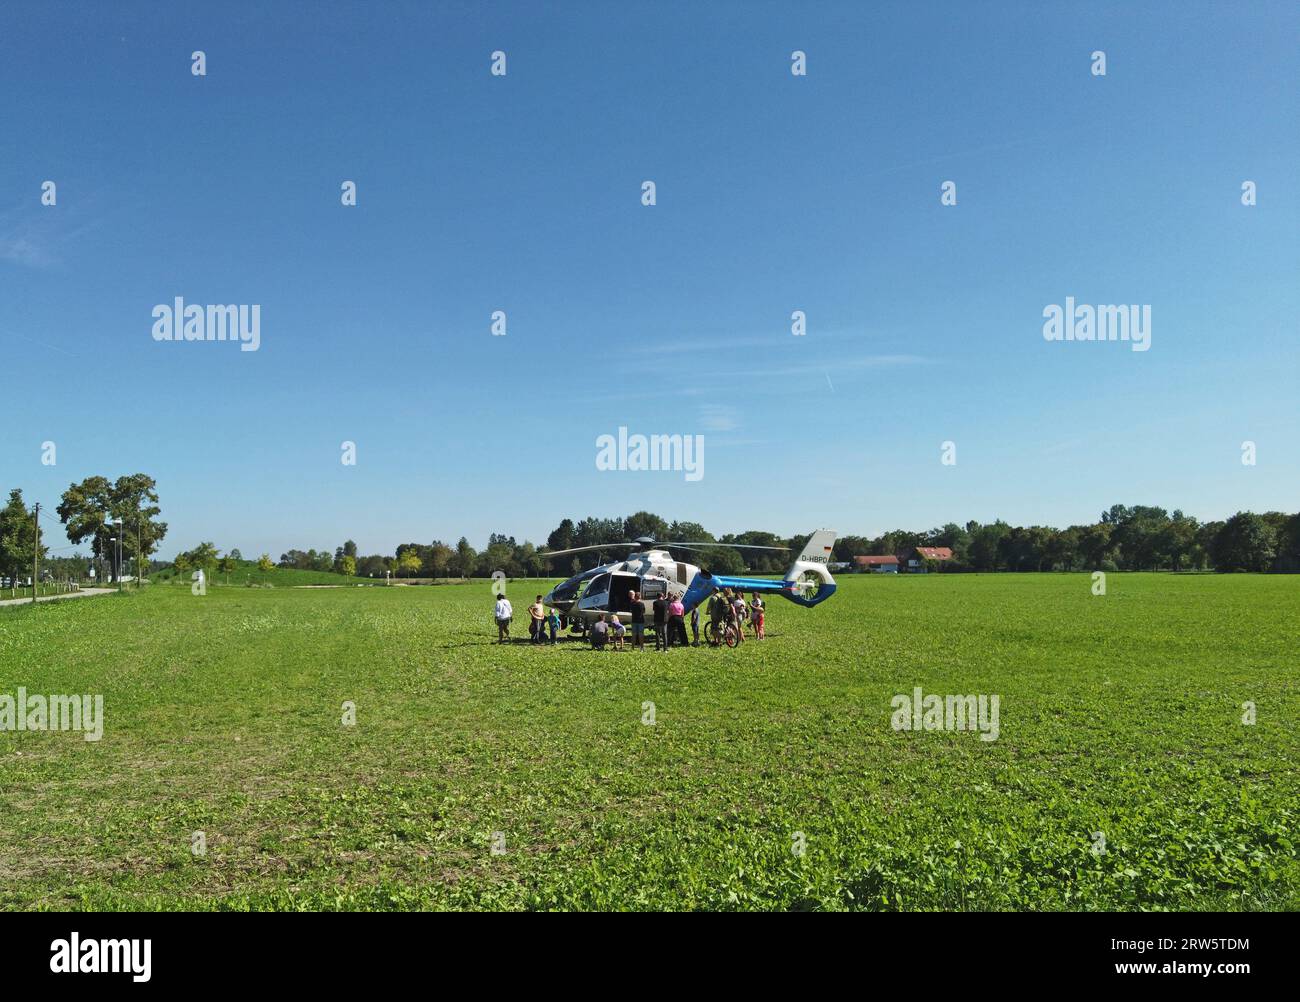 Garching BEI Muenchen, Allemagne - des personnes regardant curieusement un hélicoptère de la police bavaroise ont atterri dans un champ Banque D'Images